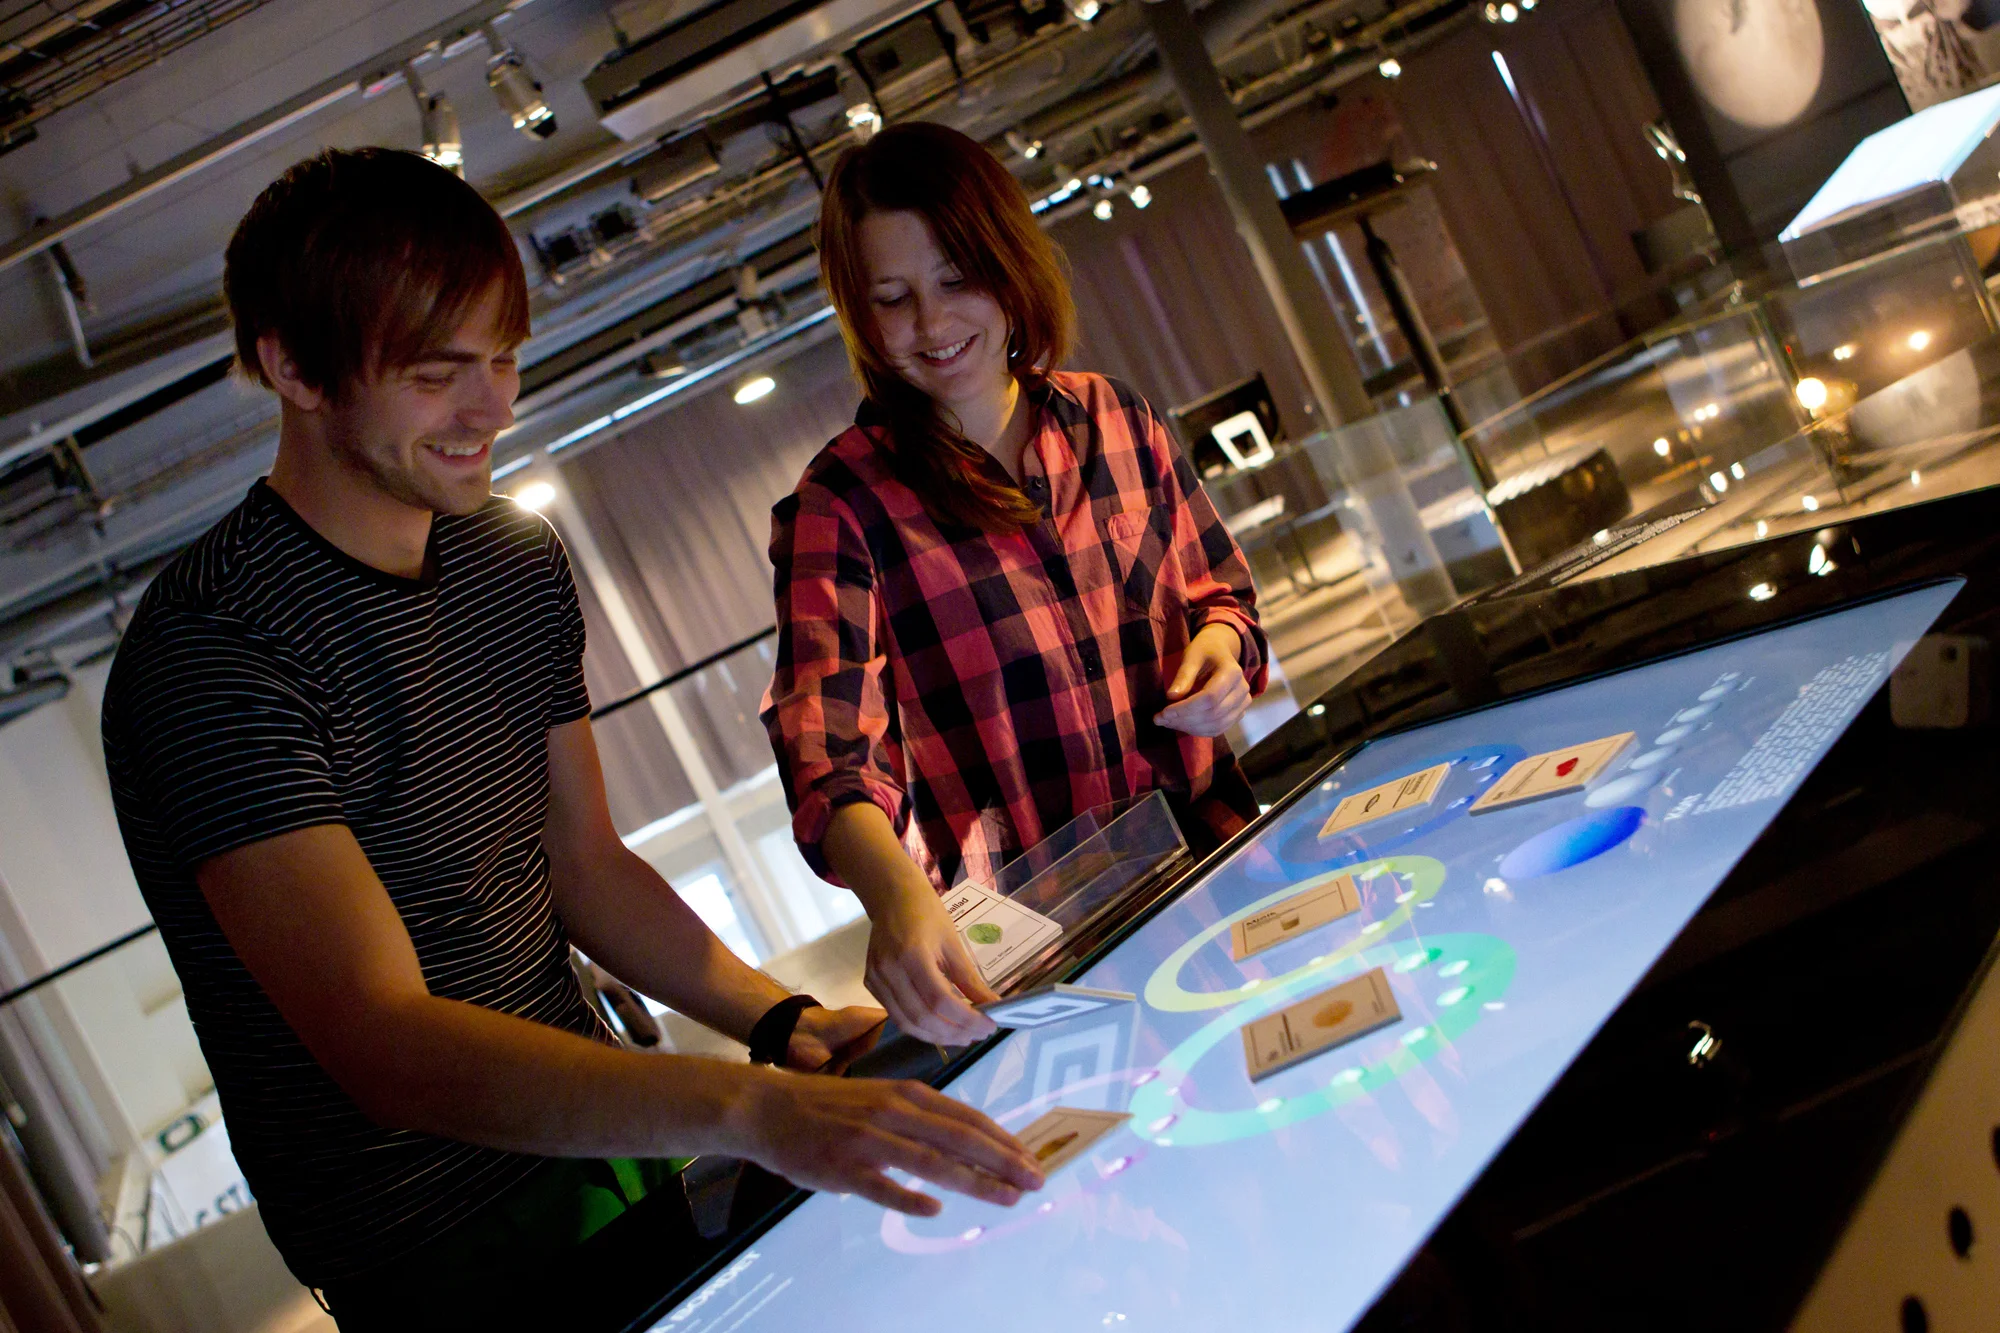 East Sweden: the growing tech hotspot attracting international talent